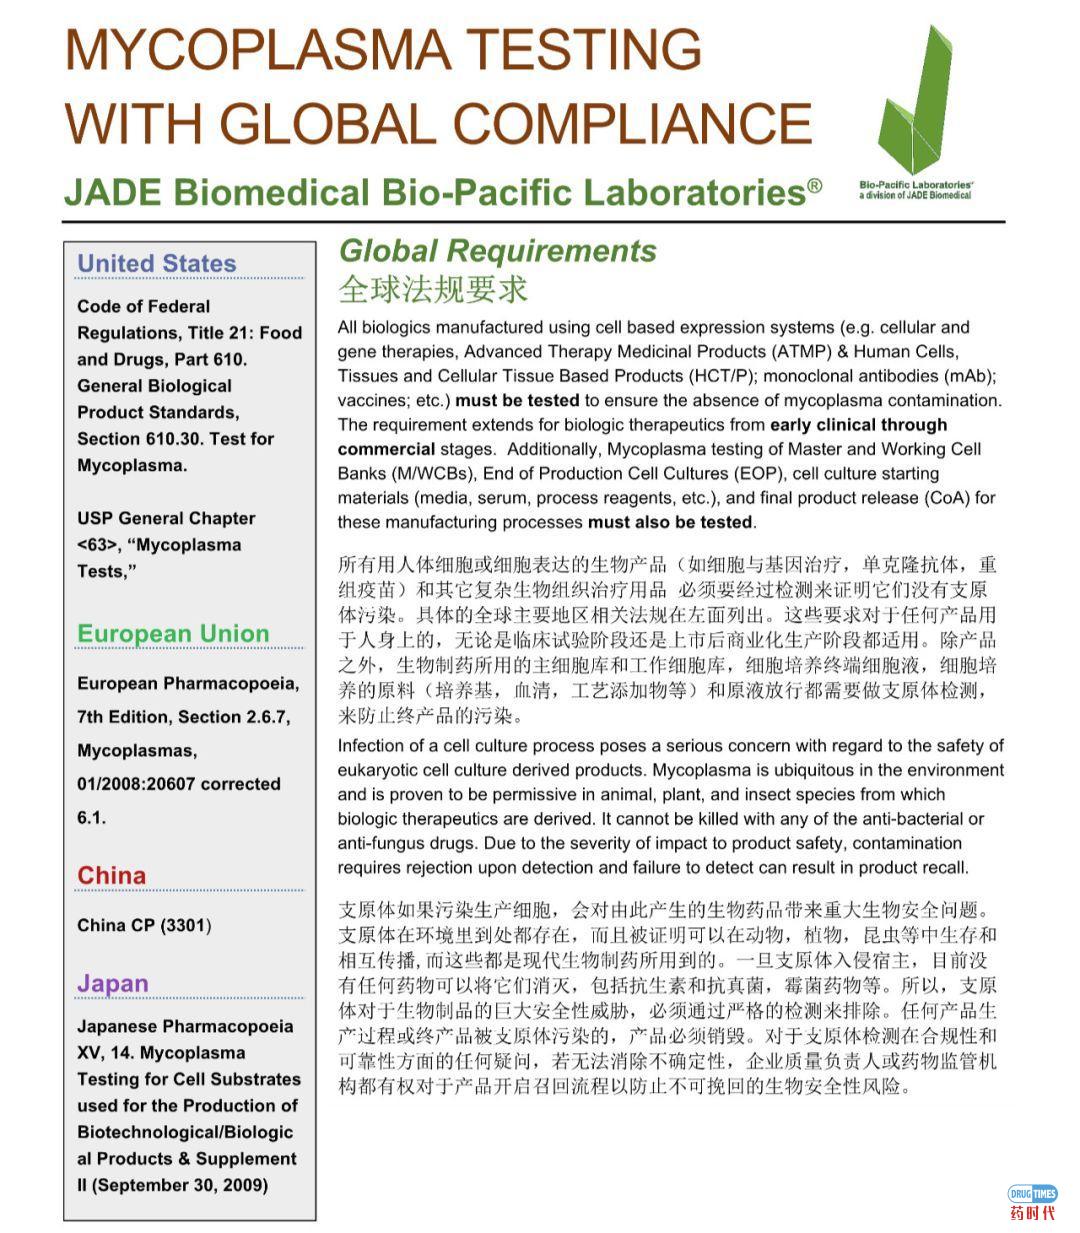 立足中国，满足全球GMP法规的支原体检测